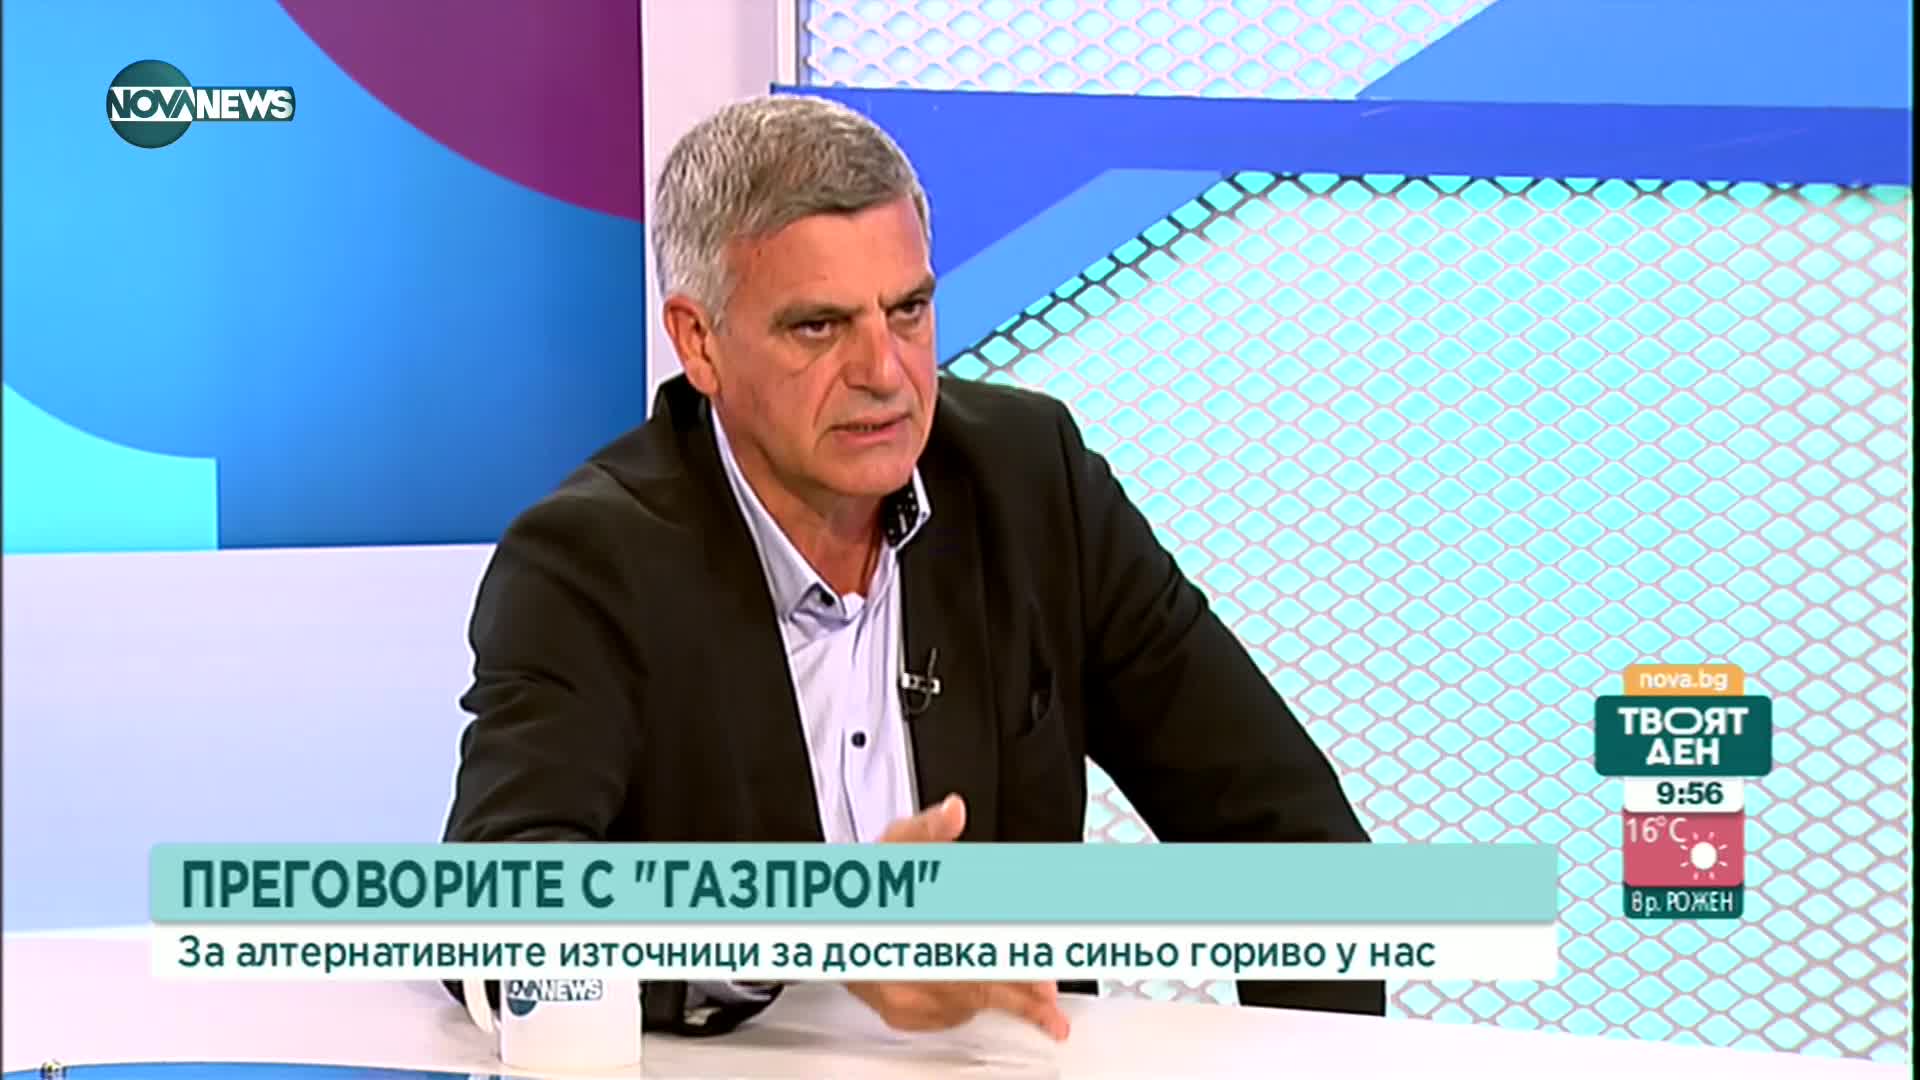 Янев: Политическият борд за депутатите от "Български възход" ще е като Горна камара на парламента